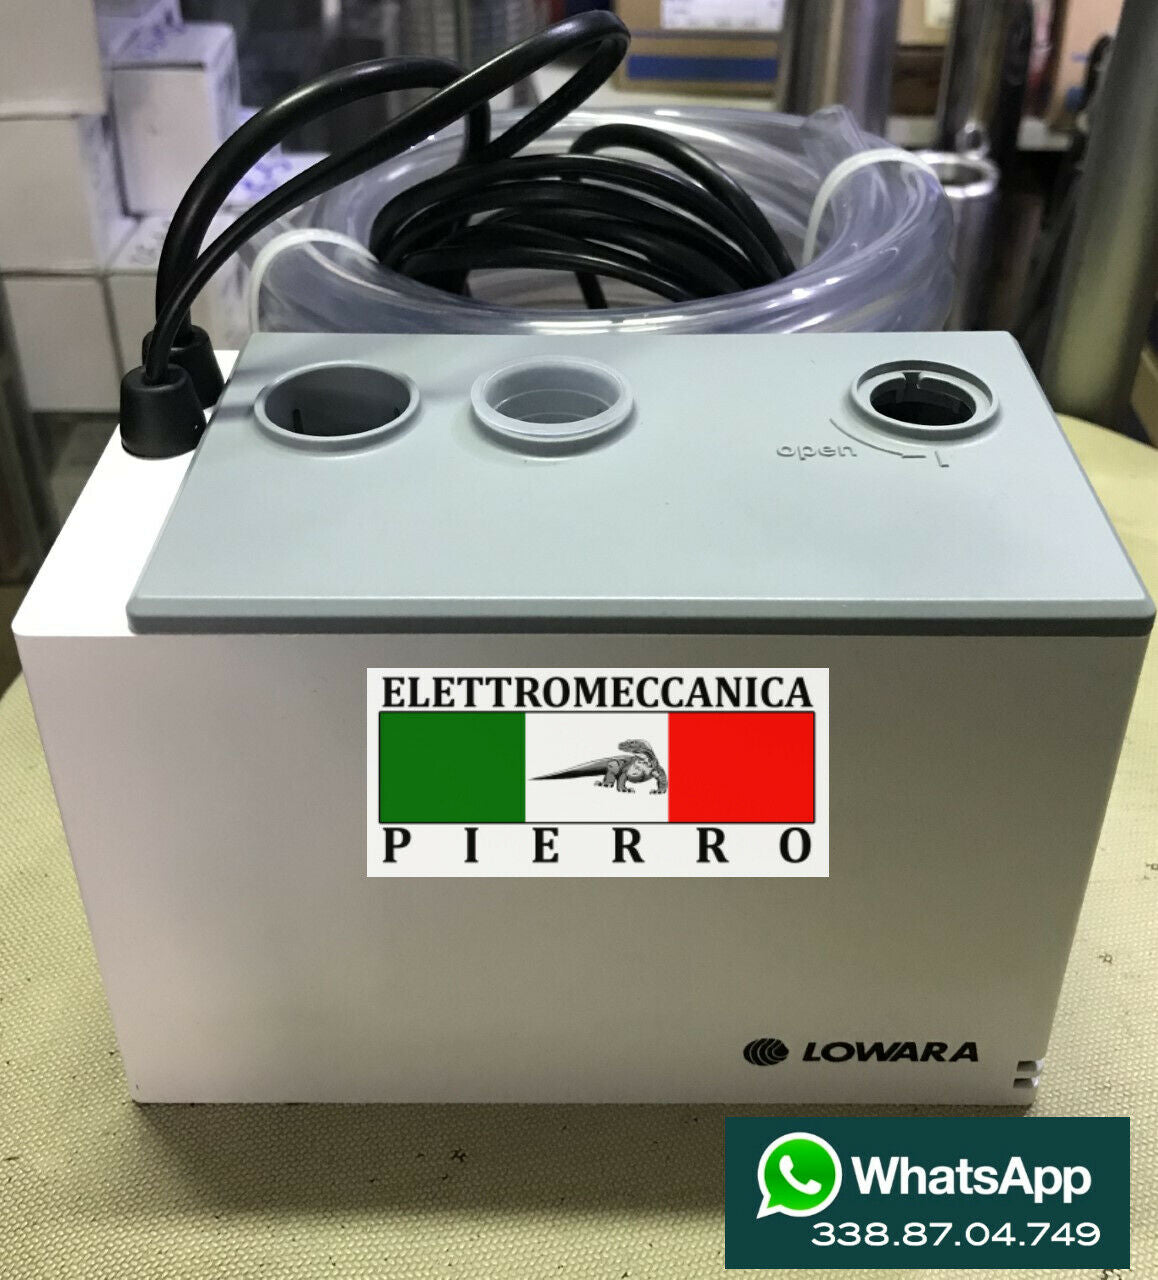 LOWARA TP1 POMPA ELETTROPOMPA PER SCARICO CONDENSA PER CALDAIE E CONDI –  Elettromeccanica Pierro Shop